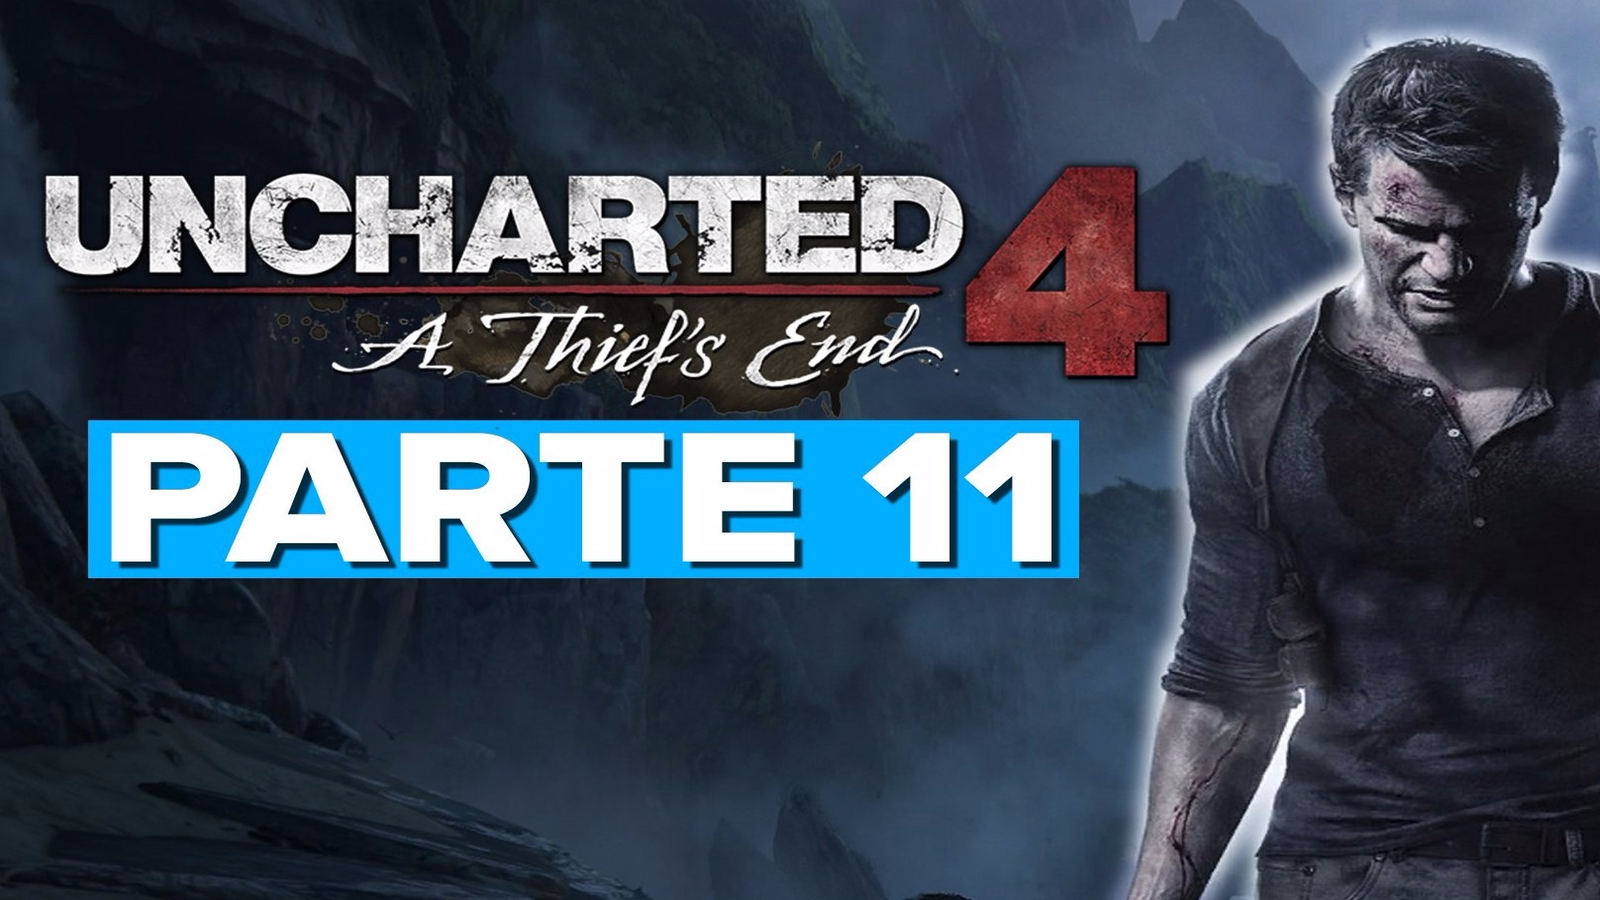 Uncharted 4: O Fim de um Ladrão”: essa série com quatro partes